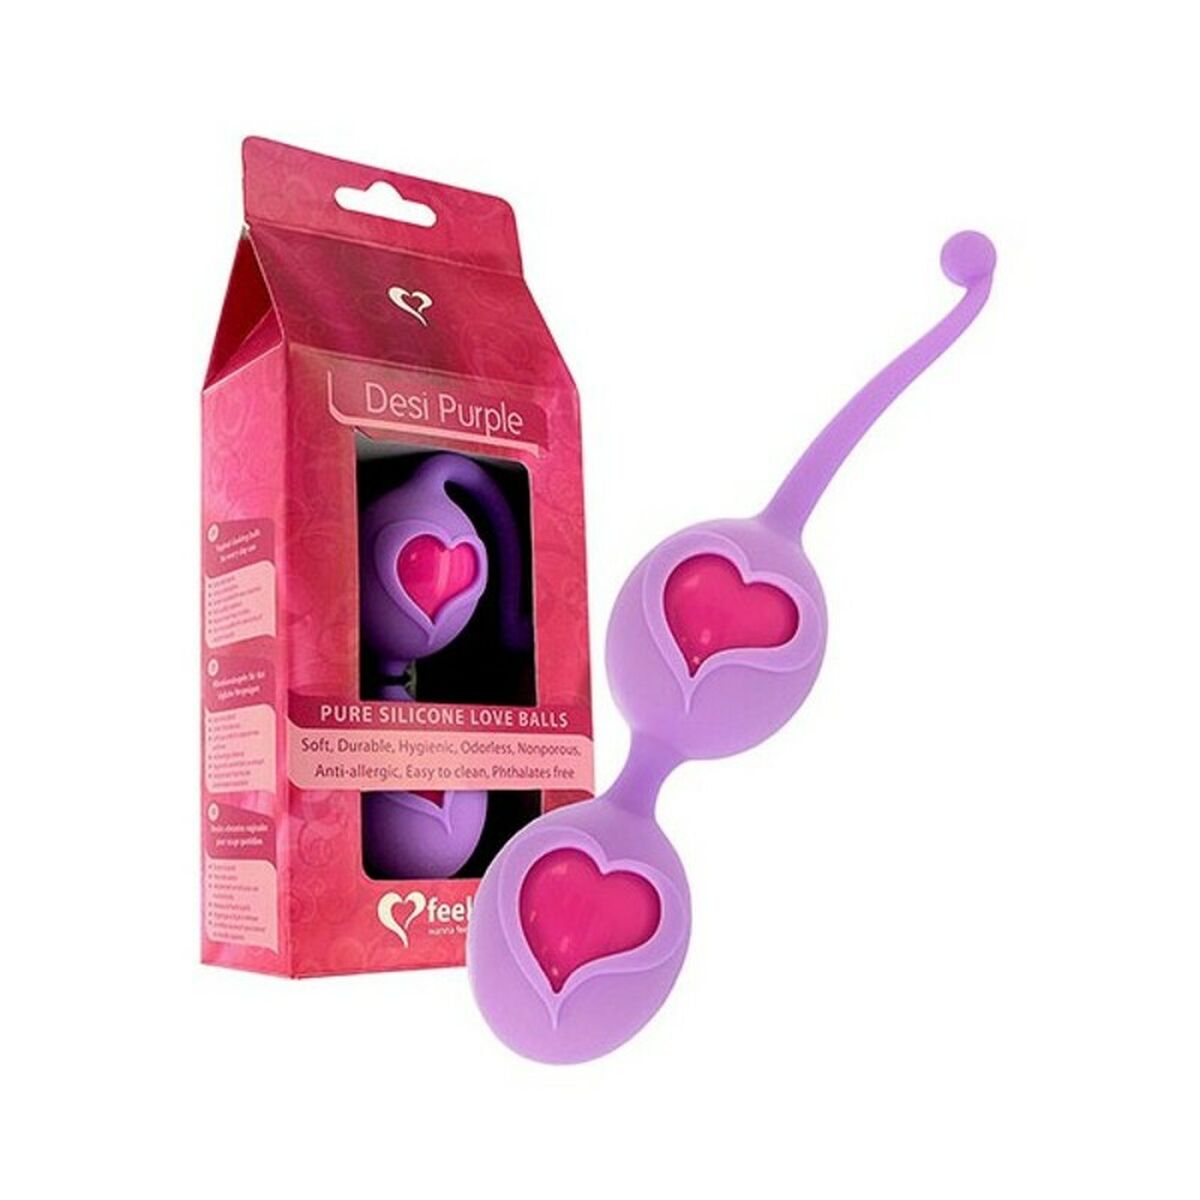 Kaufe Orgasmusbälle FeelzToys Desi Purple Silikon bei AWK Flagship um € 32.00